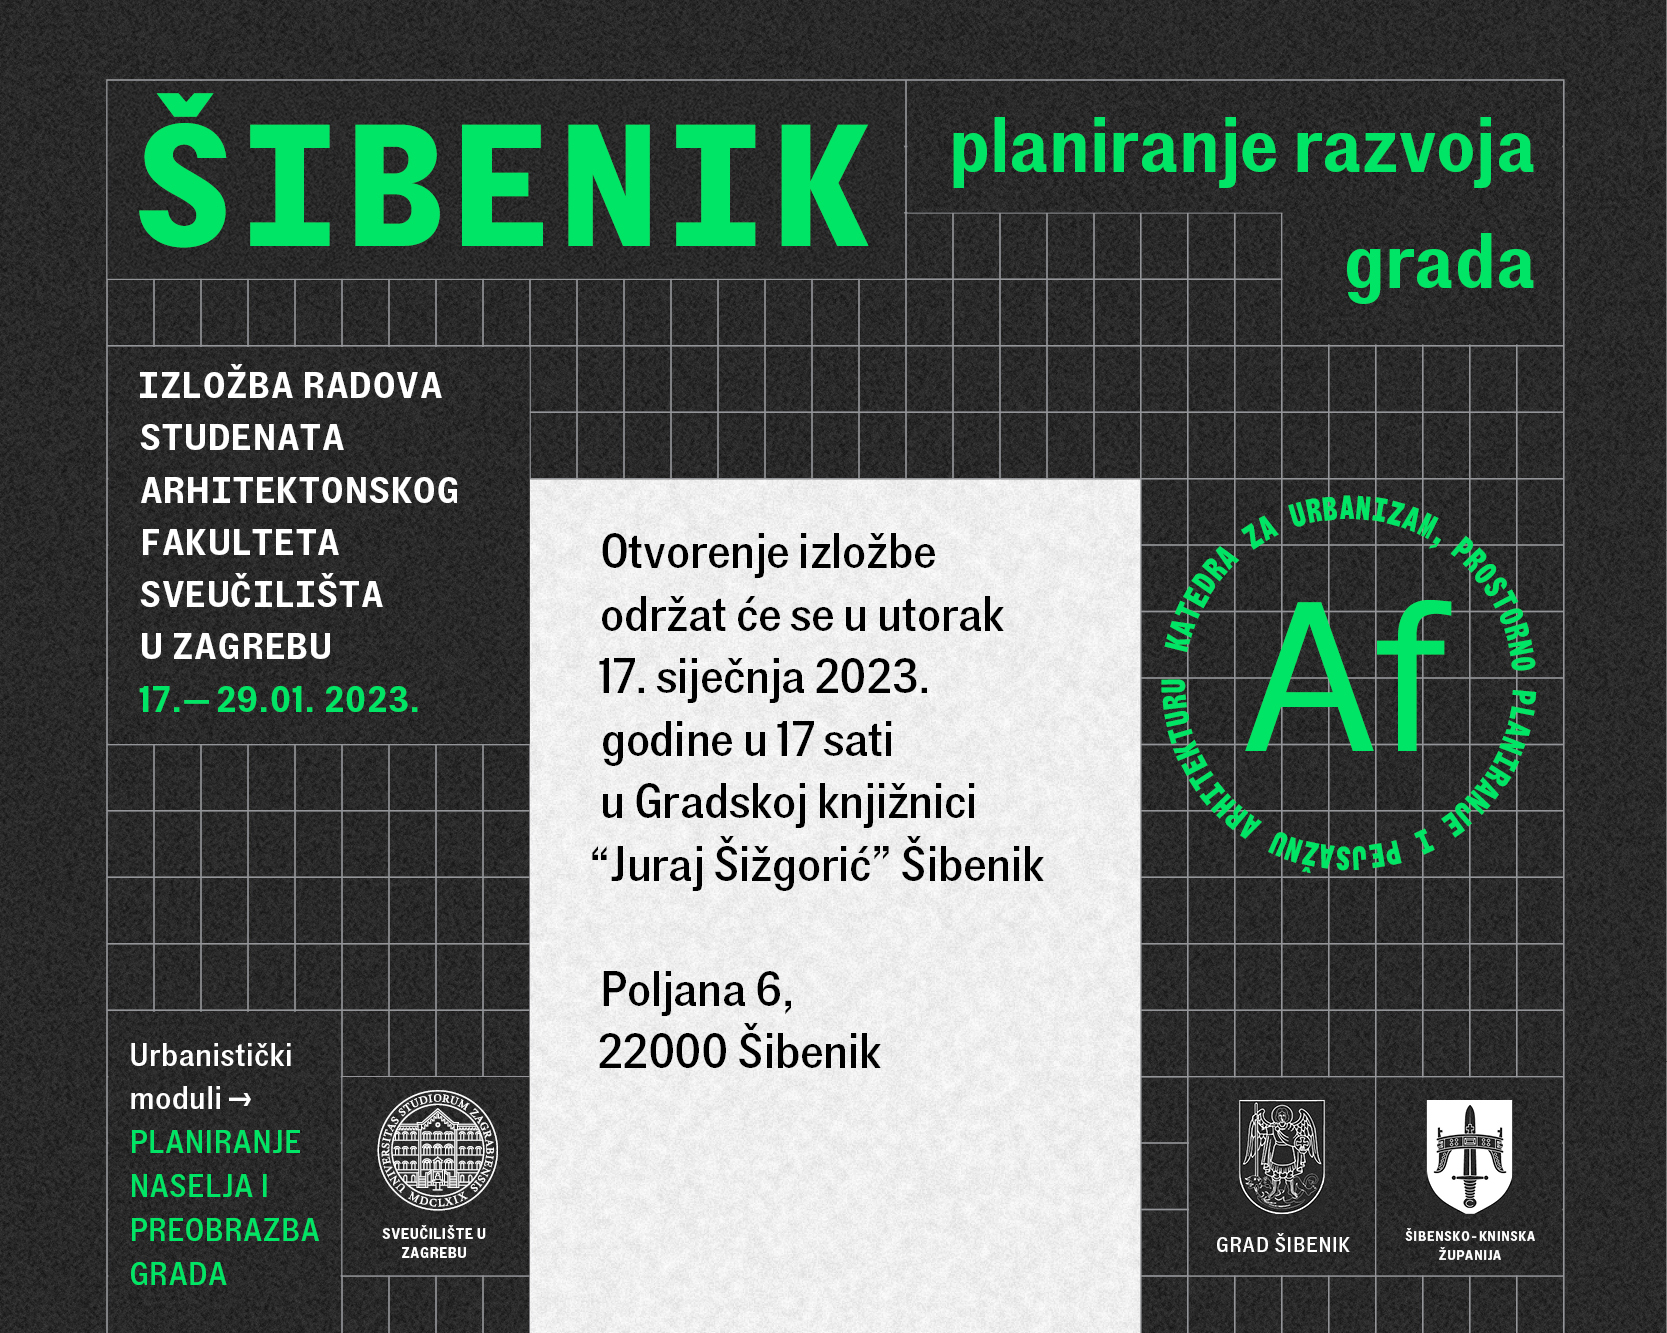 Izložba radova studenata zagrebačkog Arhitektonskog fakulteta na temu Šibenika budućnosti